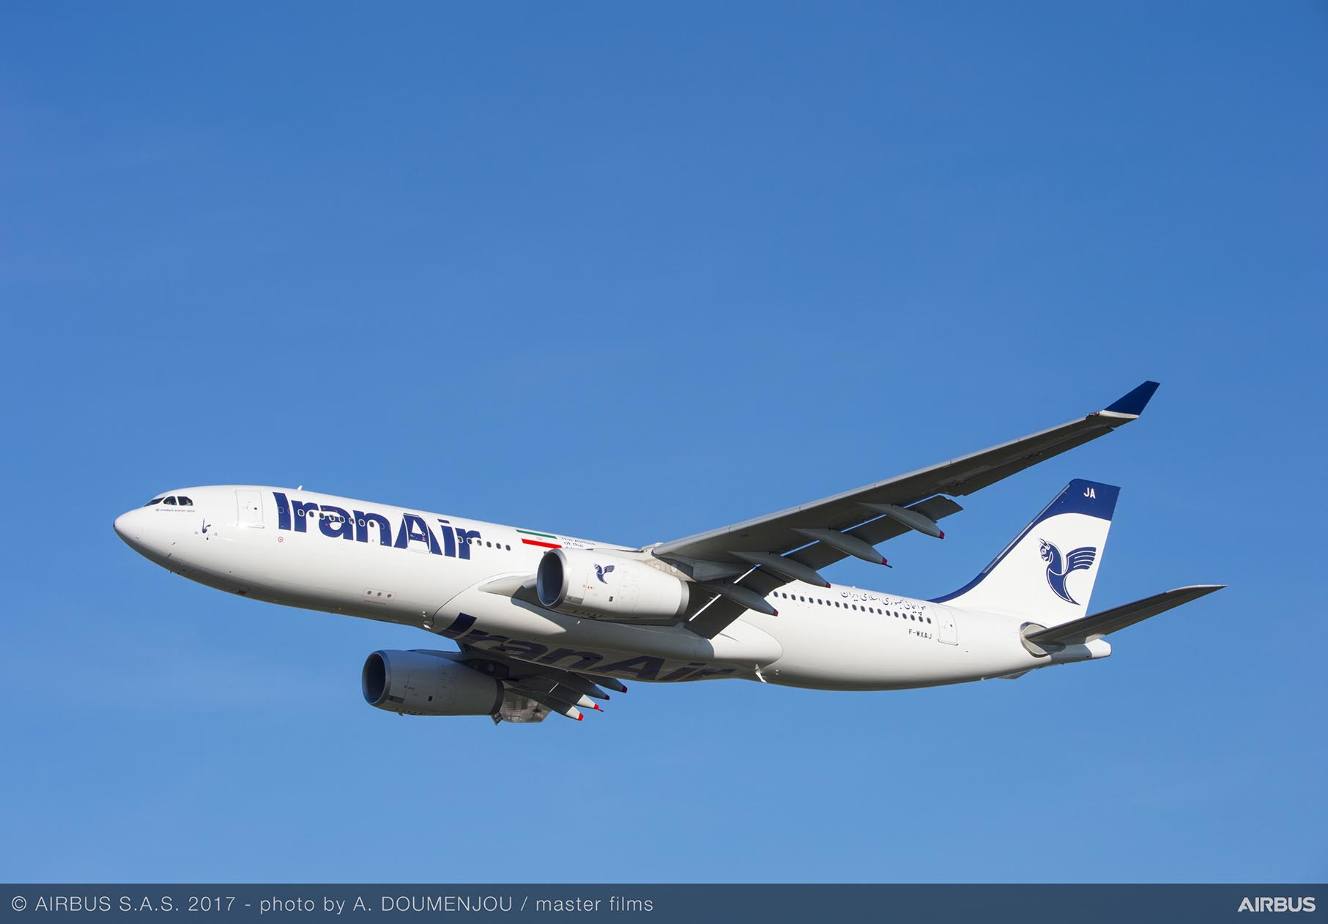 Iran Air gets first Airbus A330-200